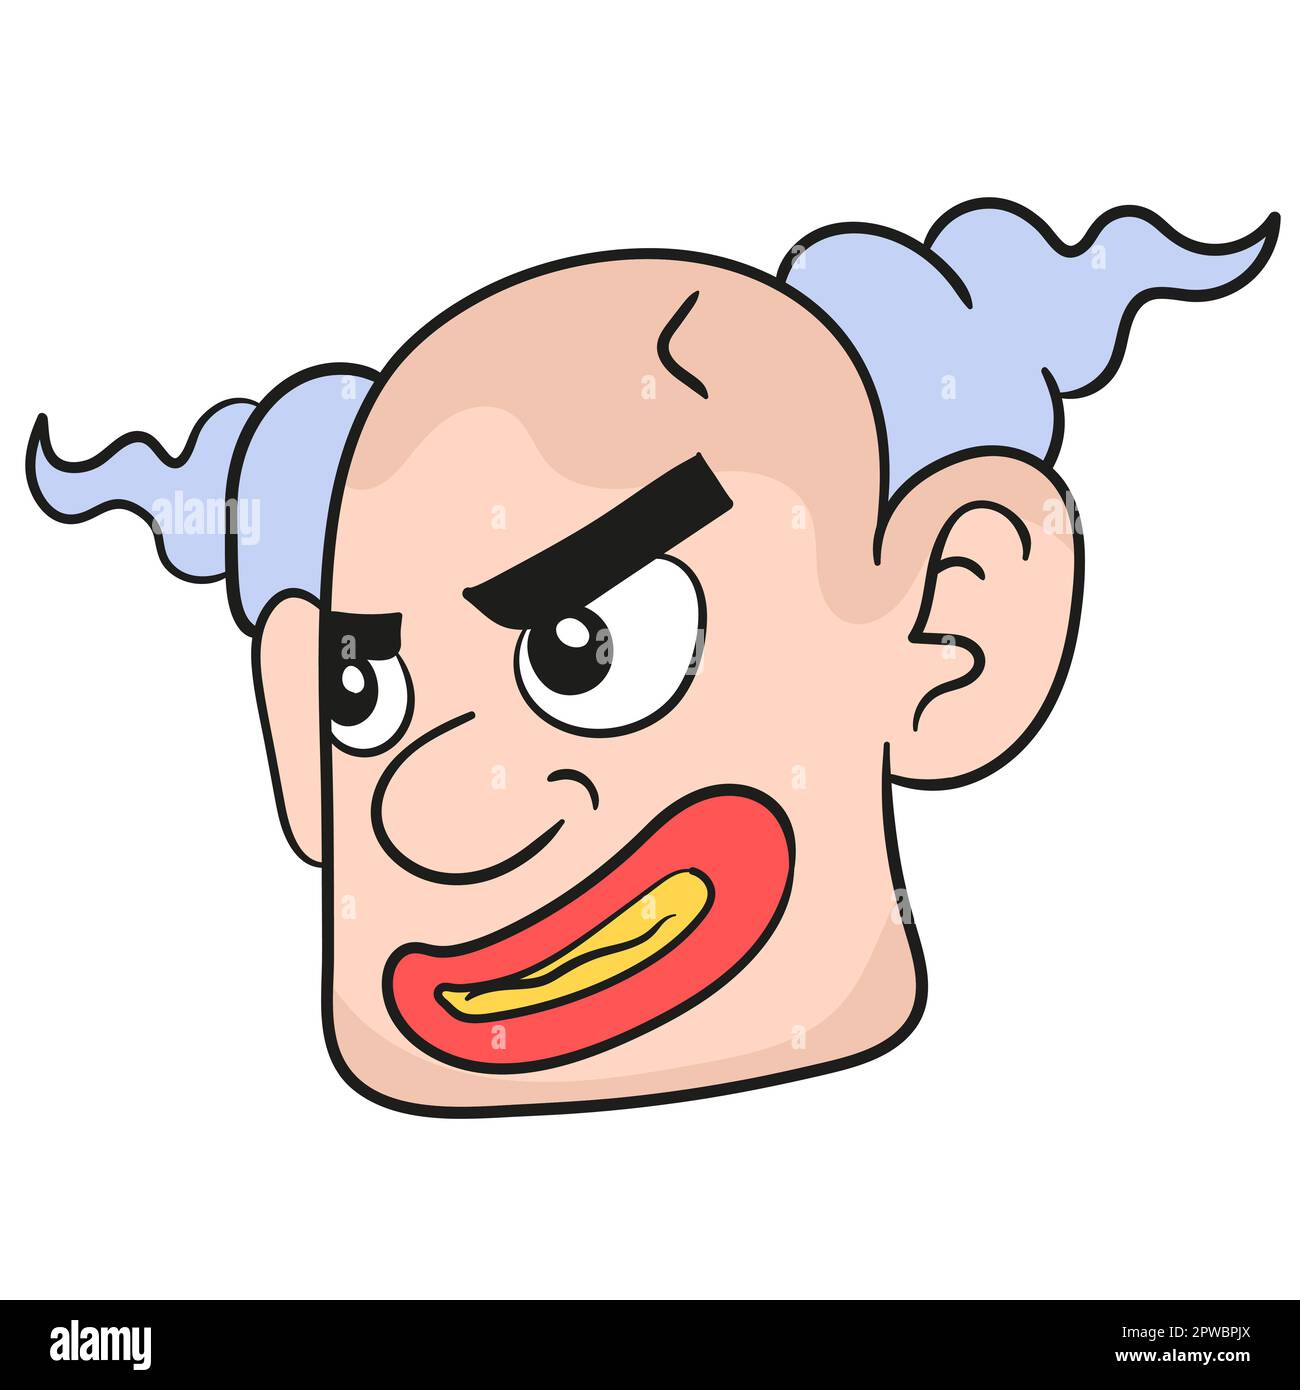 evil clown emoticon head. doodle icon image Stock Vector